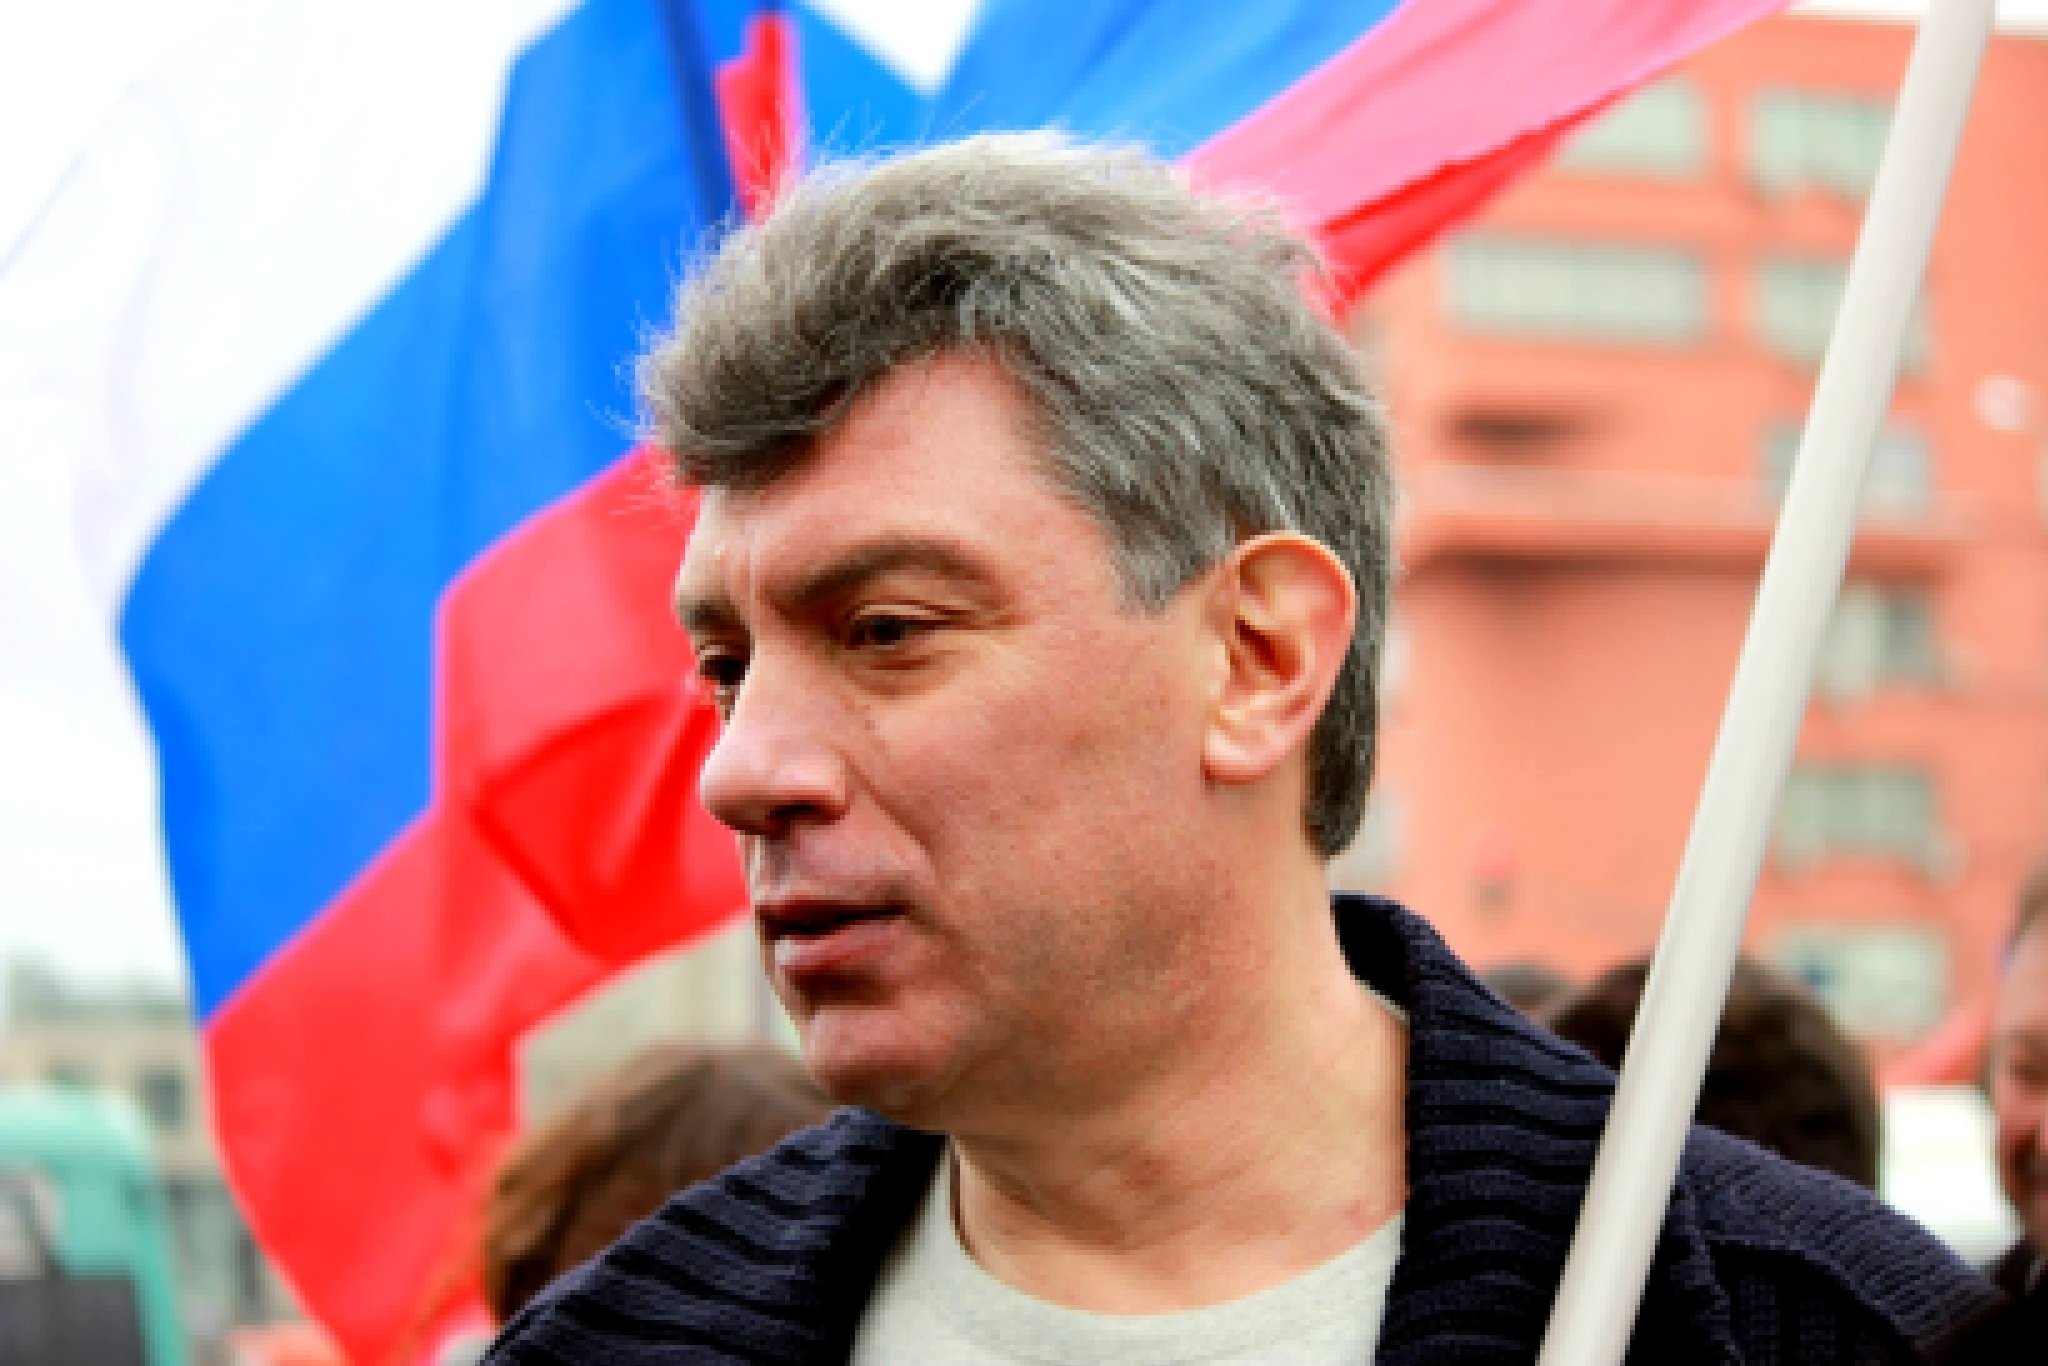 Назначенная оппозиция. Немцов 2014. Немцов 2003.